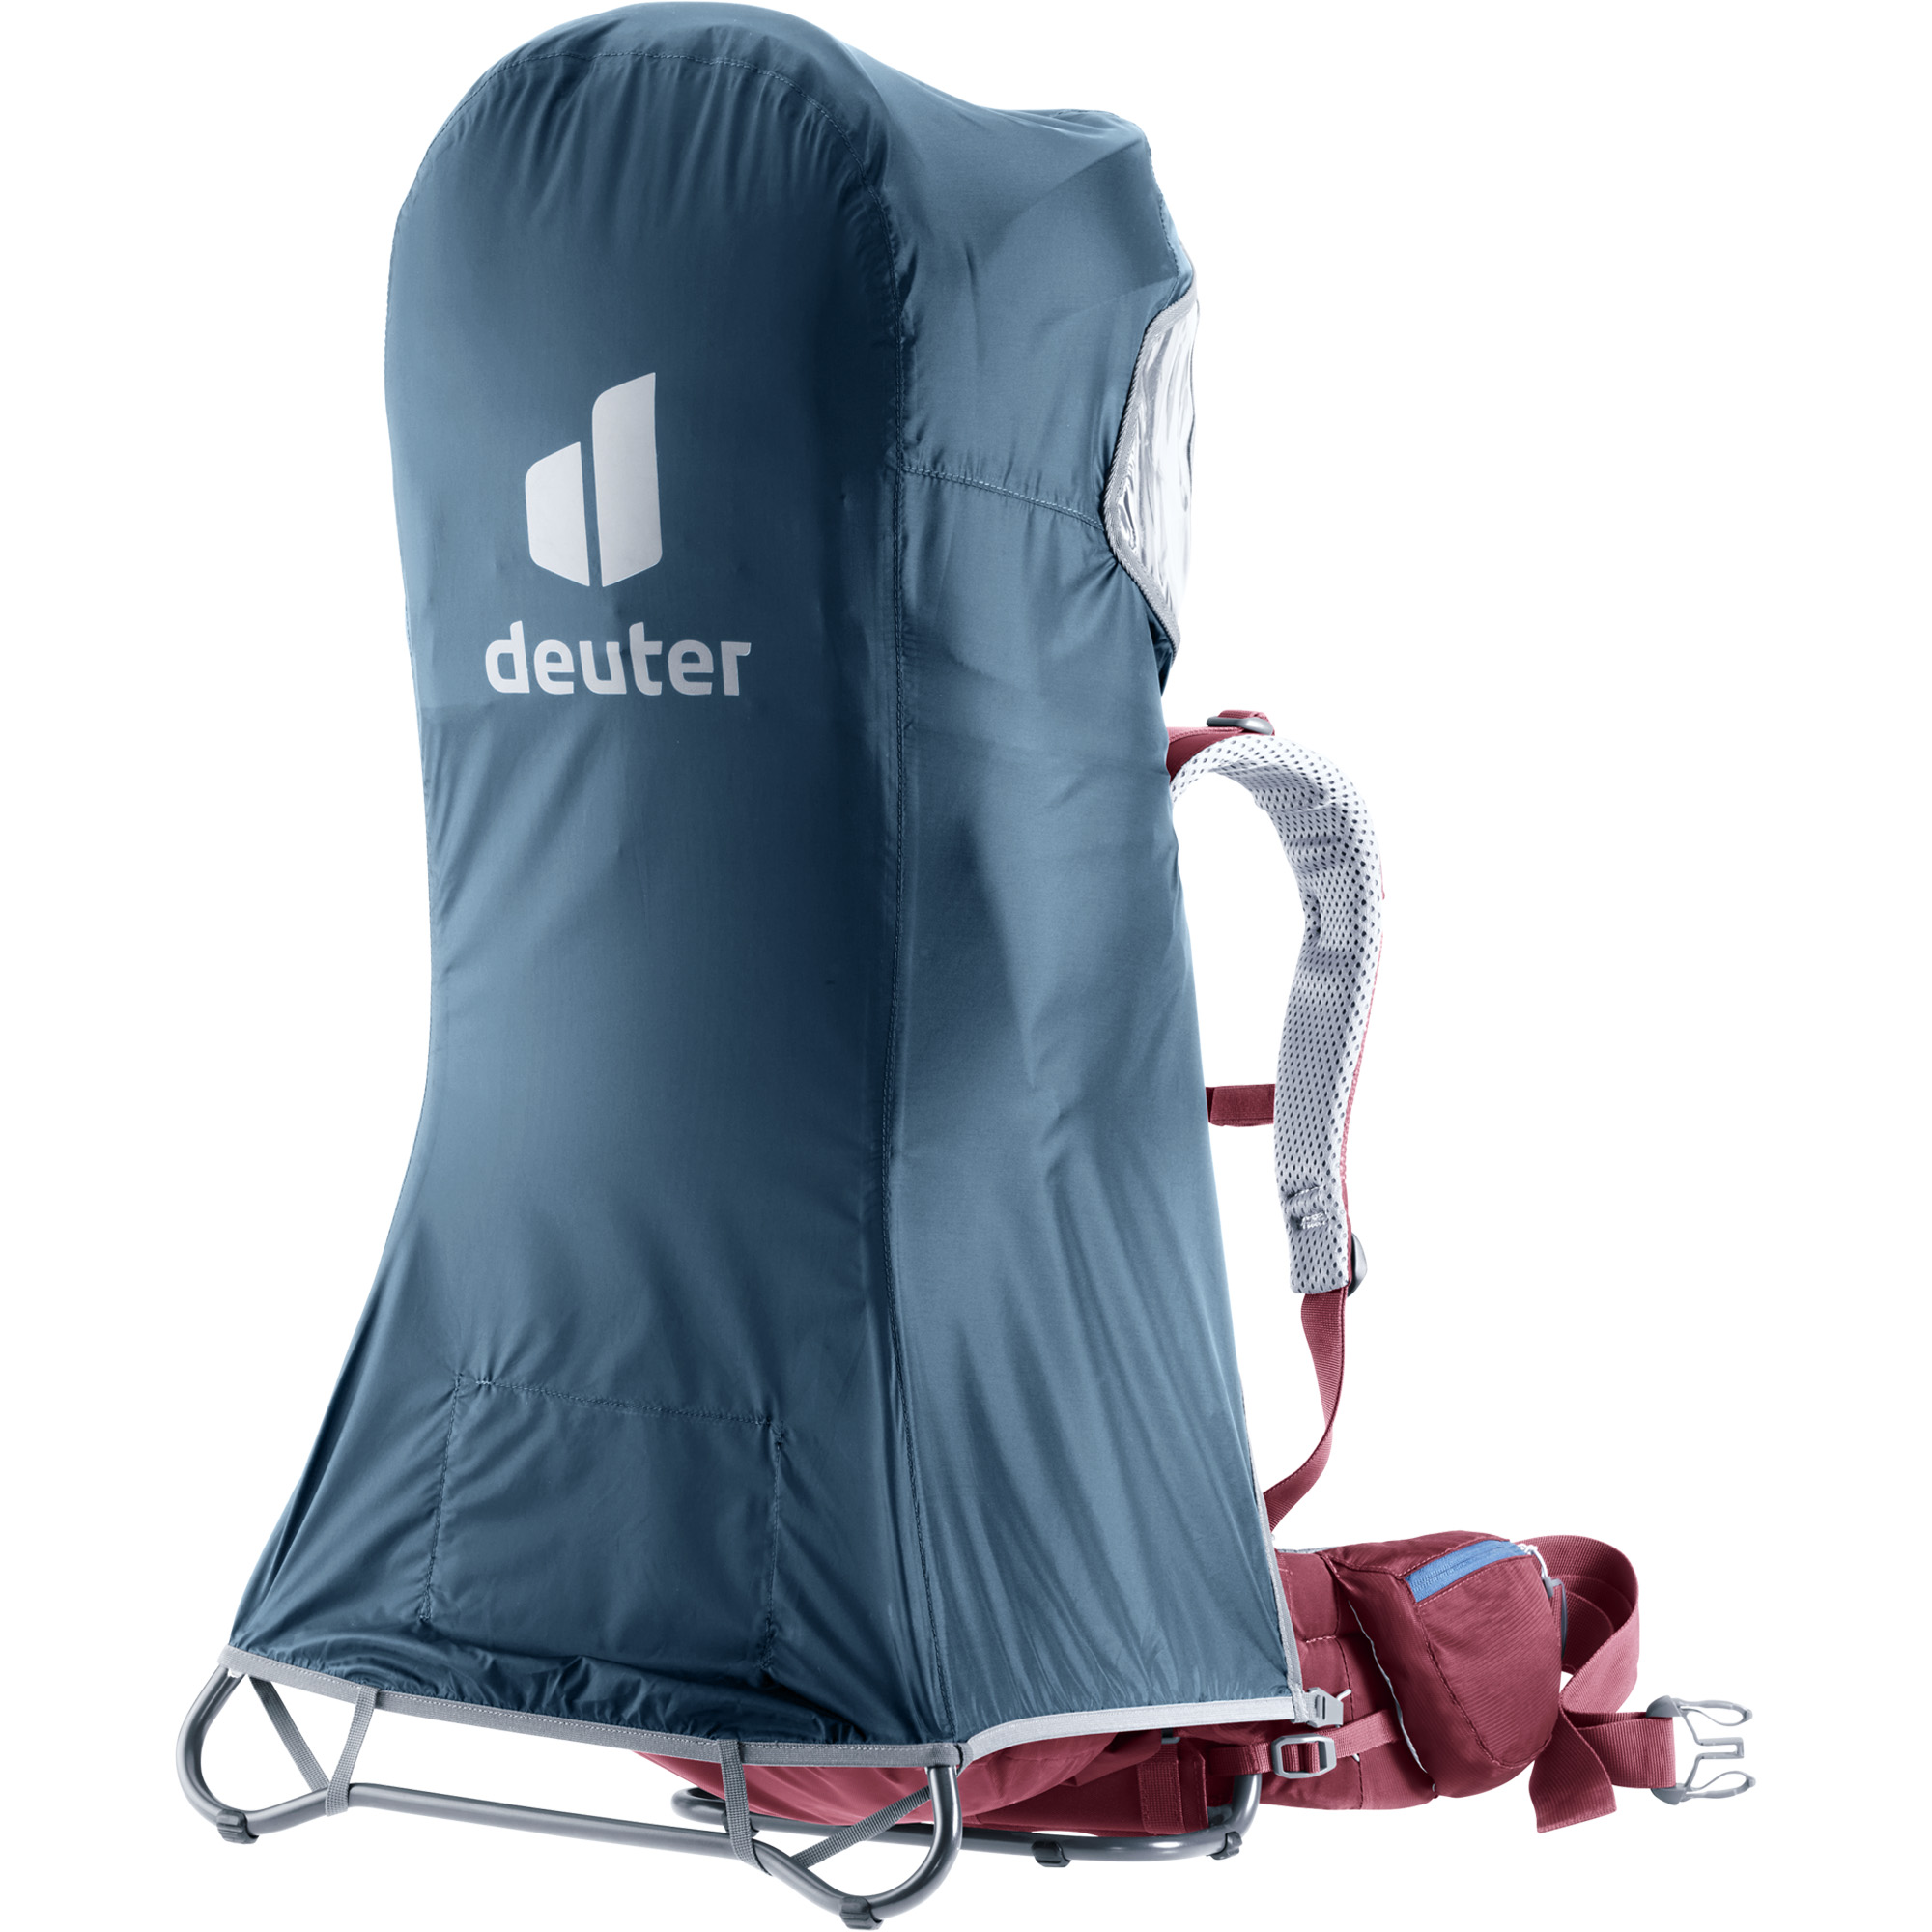 Deuter Kid Comfort Deluxe Rain Cover Carrier Accessory